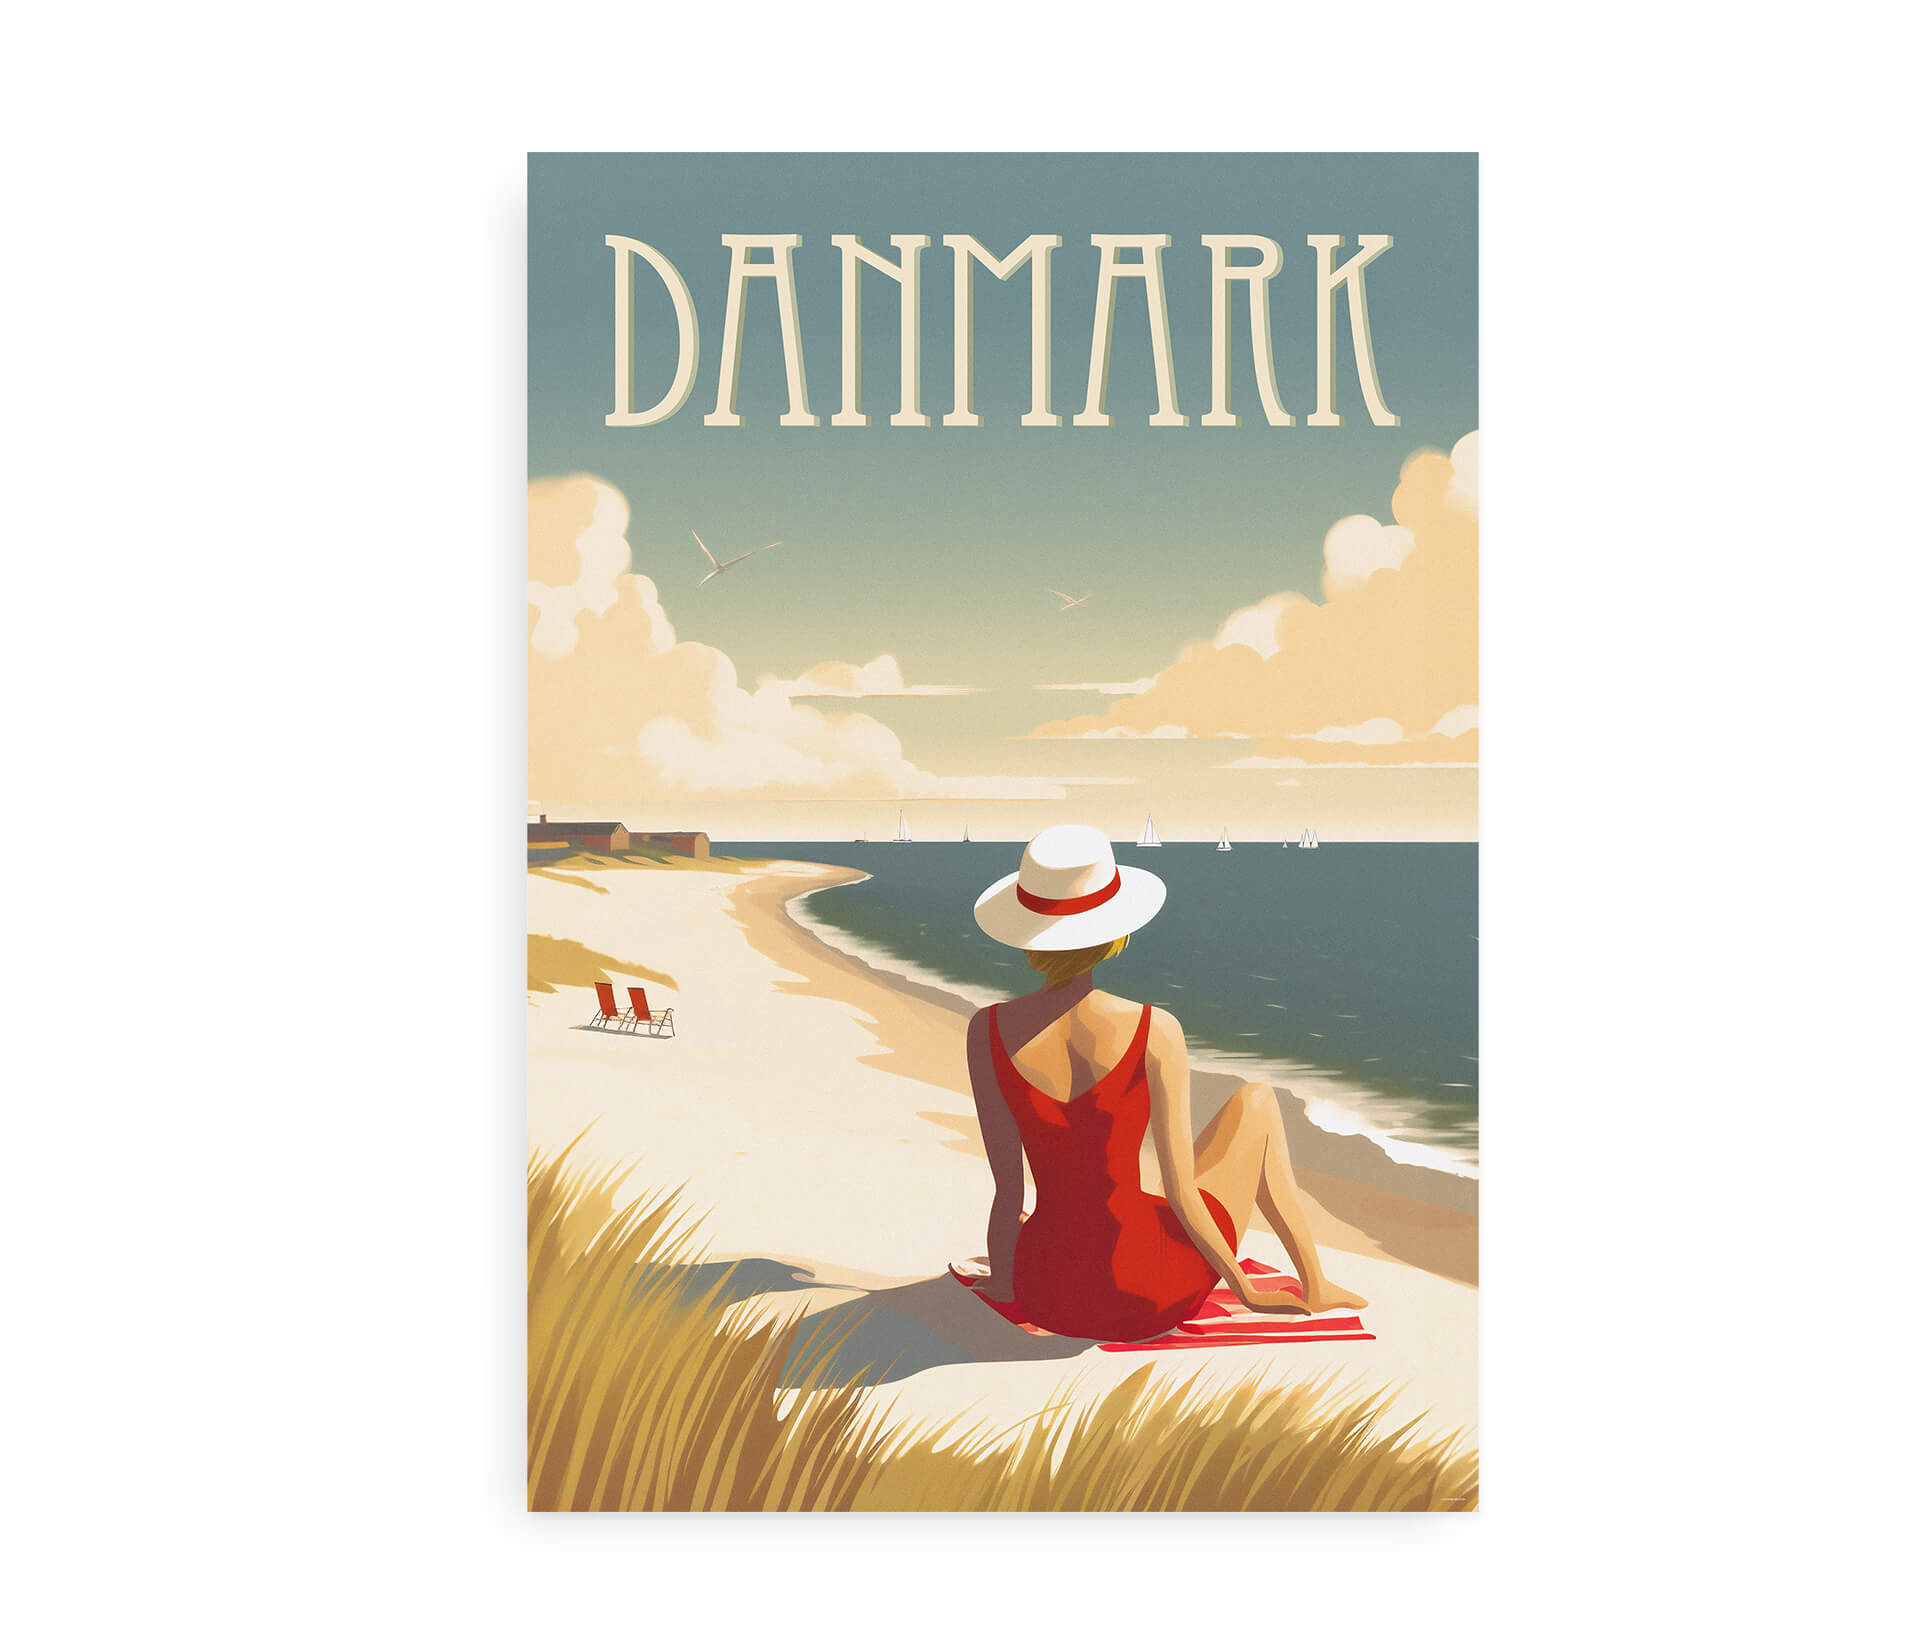 Danmark Vestkysten - Plakat med motiv fra Vestkysten